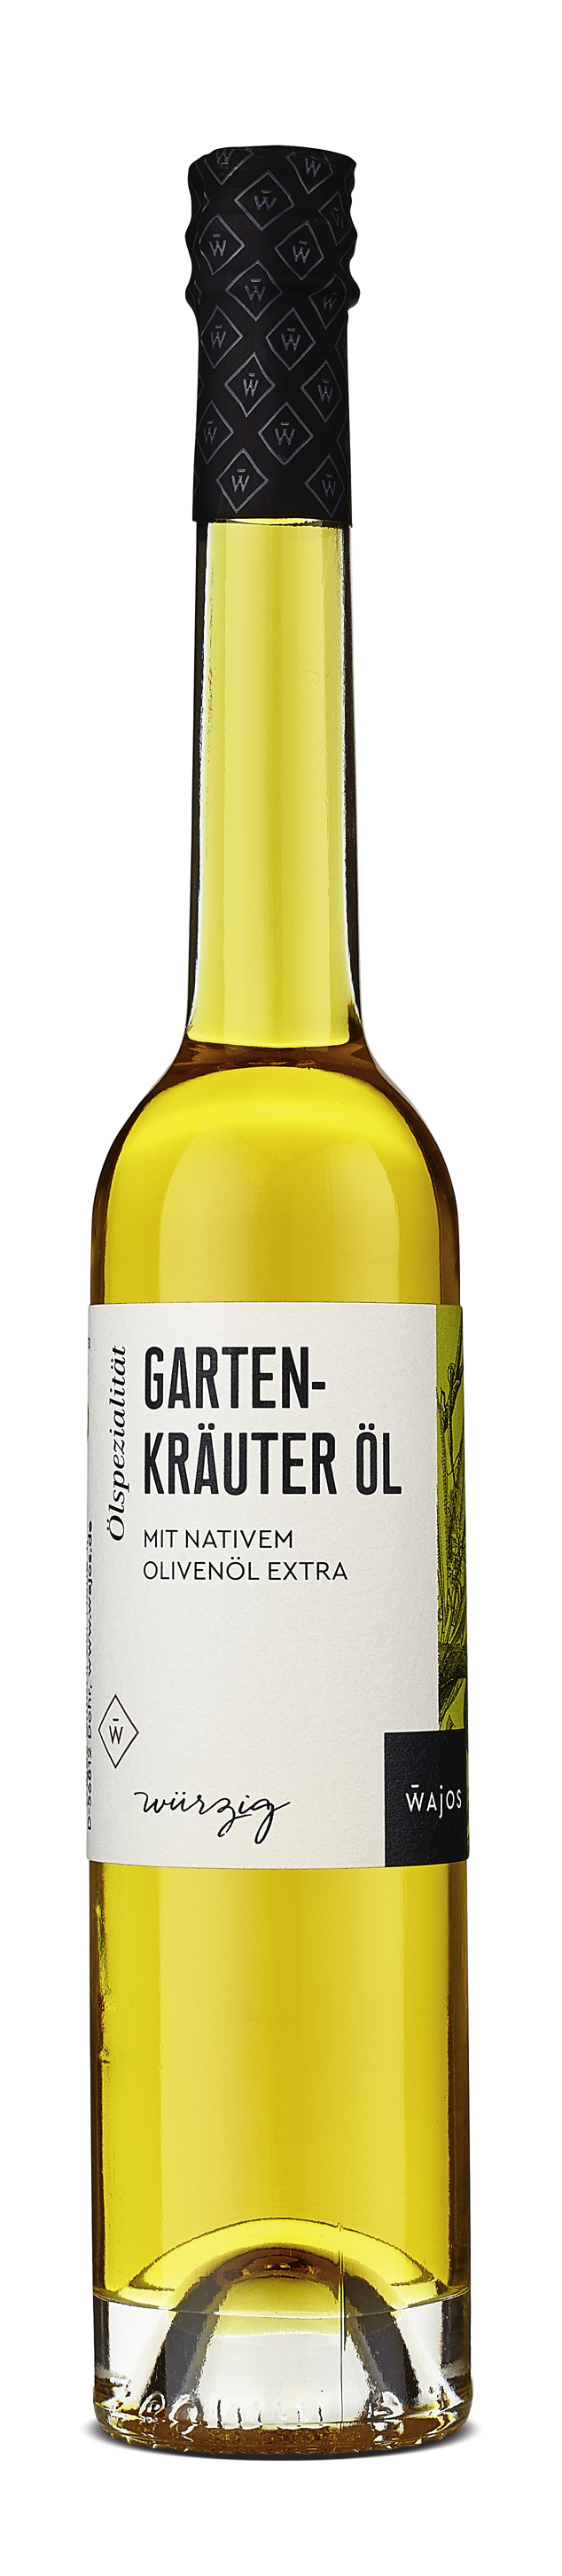 Gartenkräuter Öl mit vativem Olivenöl extra